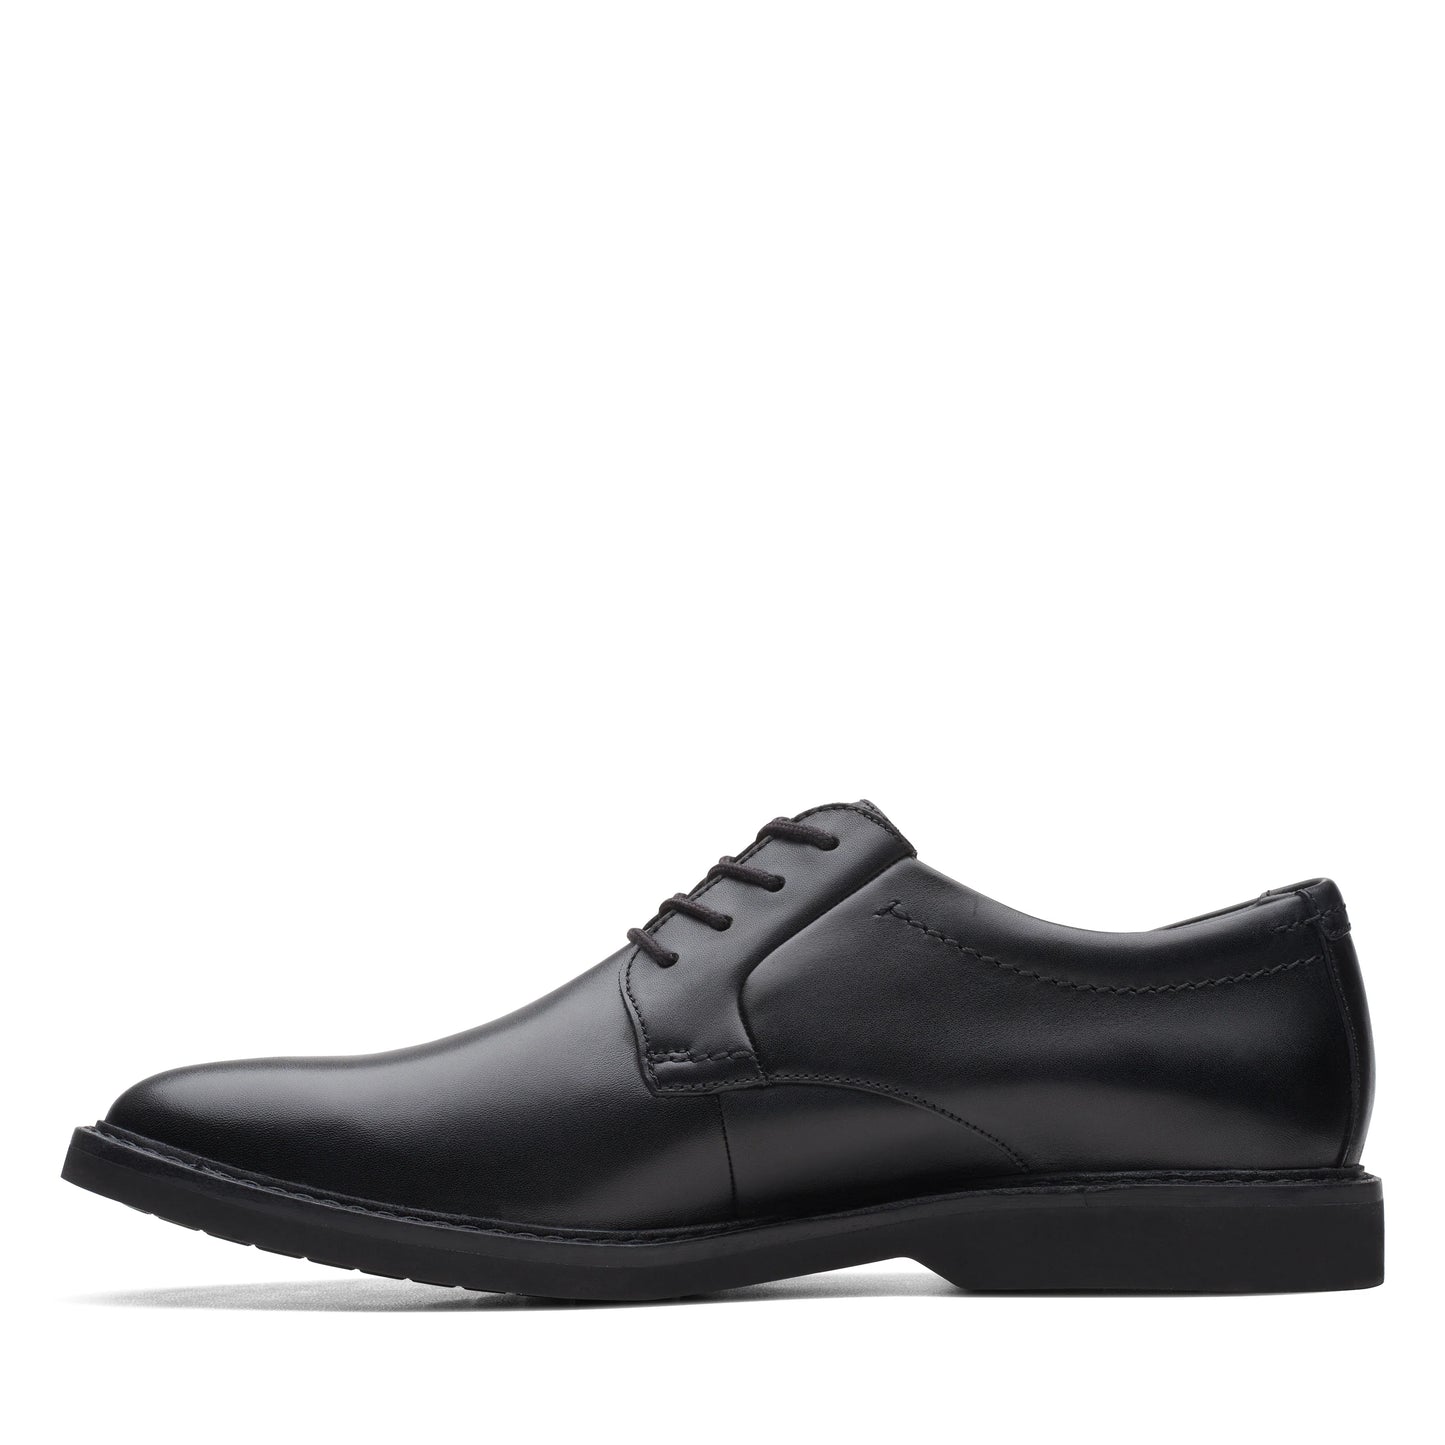 CLARKS | أحذية ديربي للرجال | ATTICUS LT LOGTX BLACK LEATHER | أسود